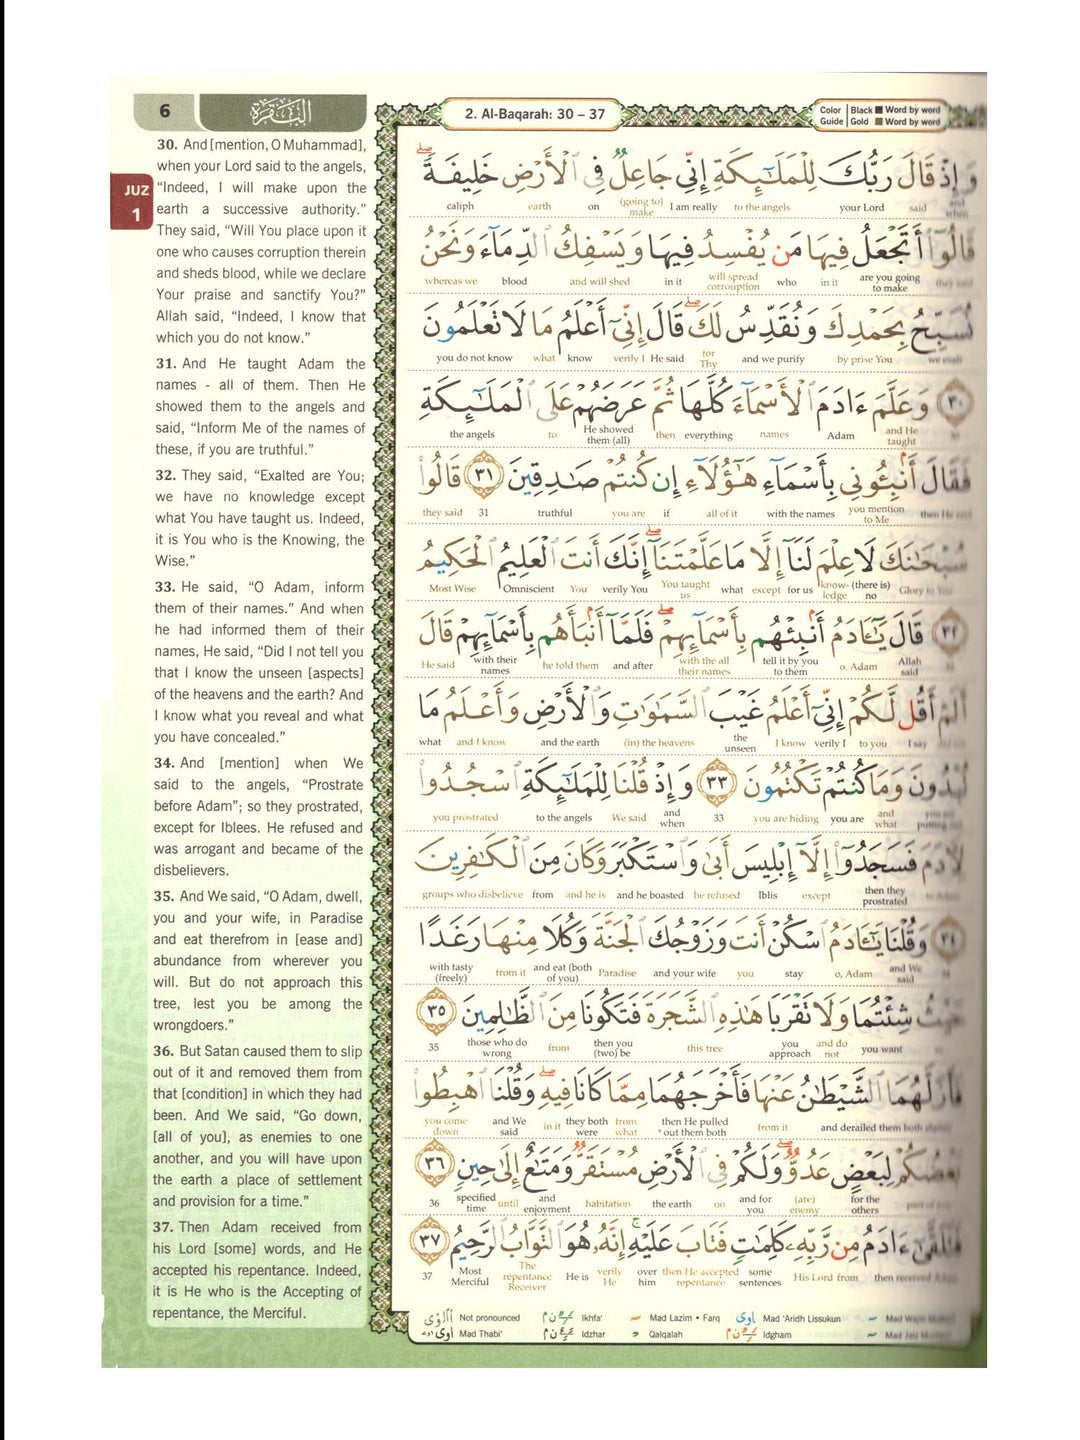 Al Quran Al Karim - Word By Word Translation - A5 Small